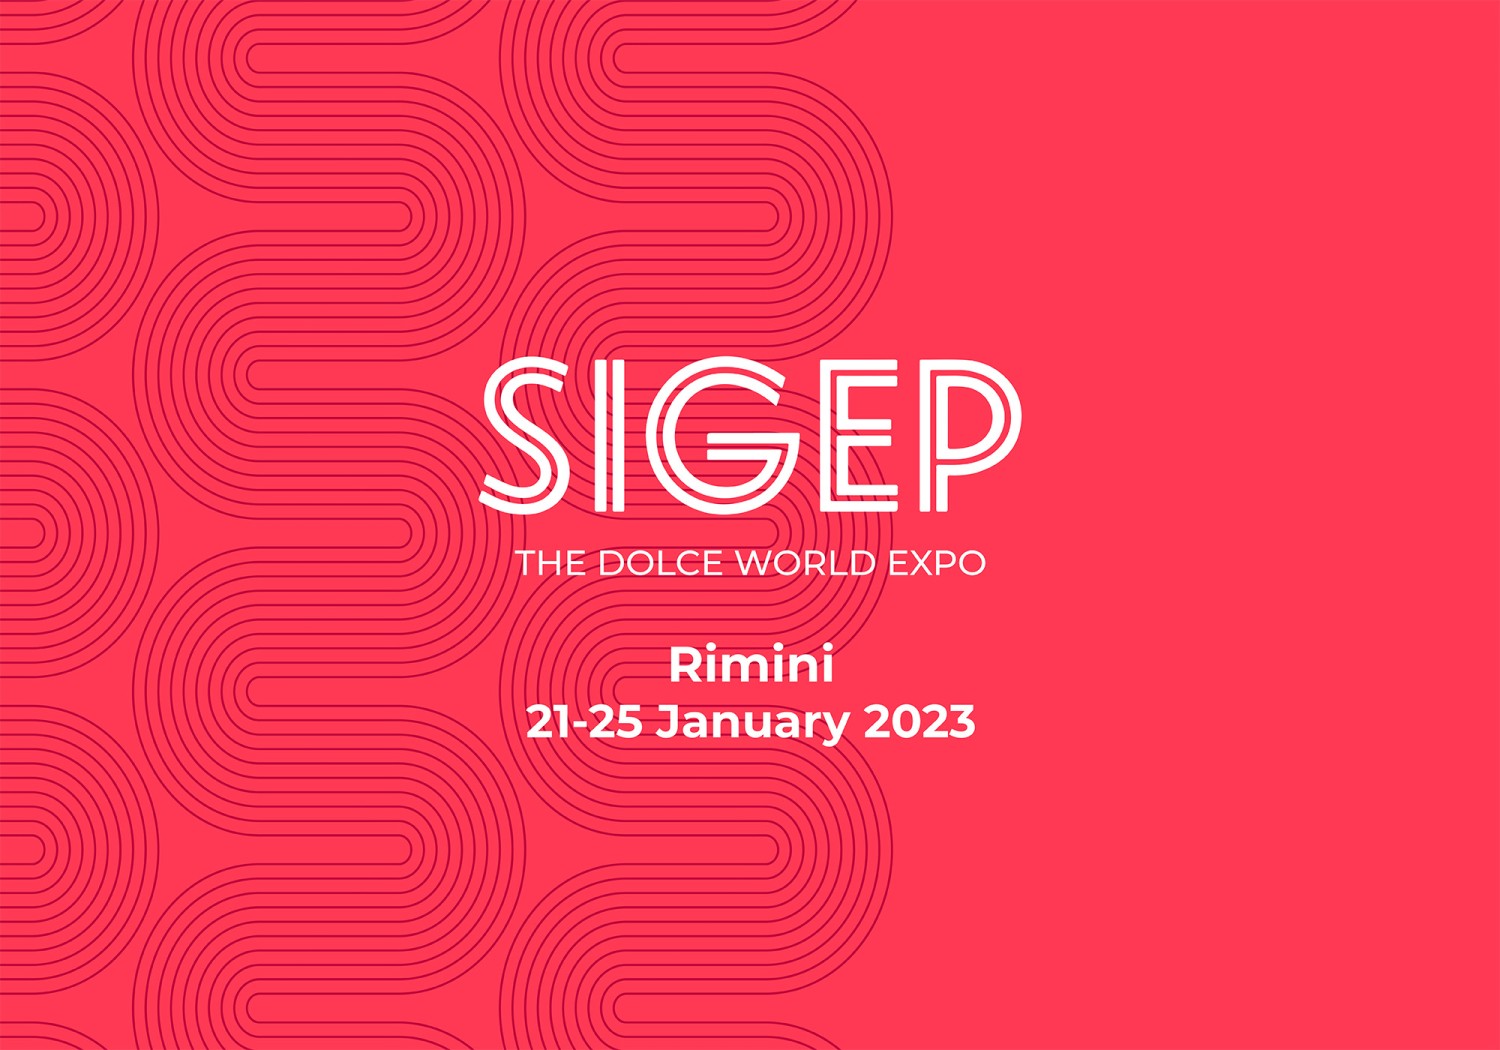 Ceado at Sigep Rimini 2023